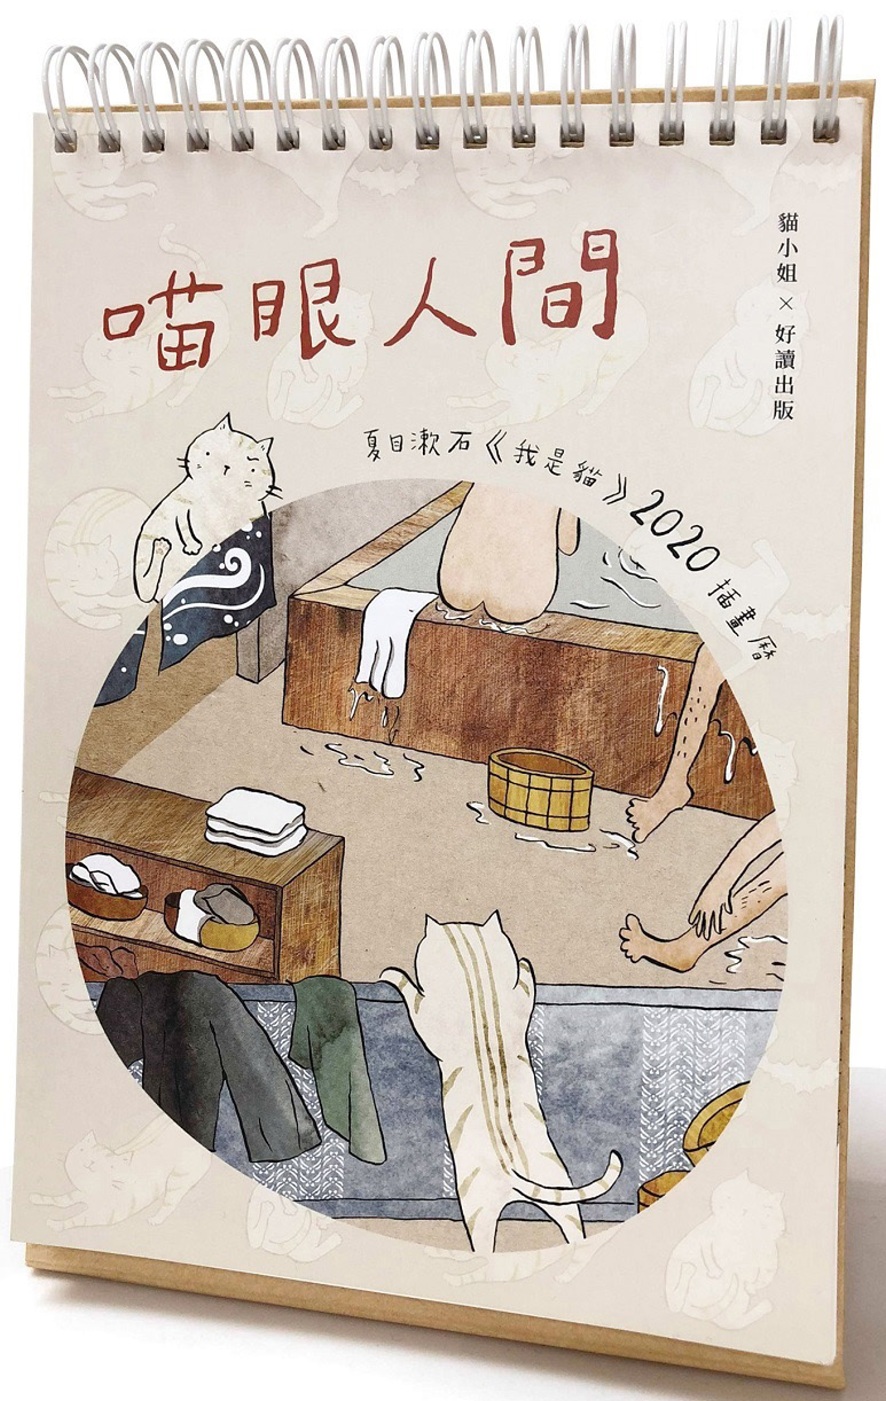 喵眼人間：夏目漱石《我是貓》2020插畫曆